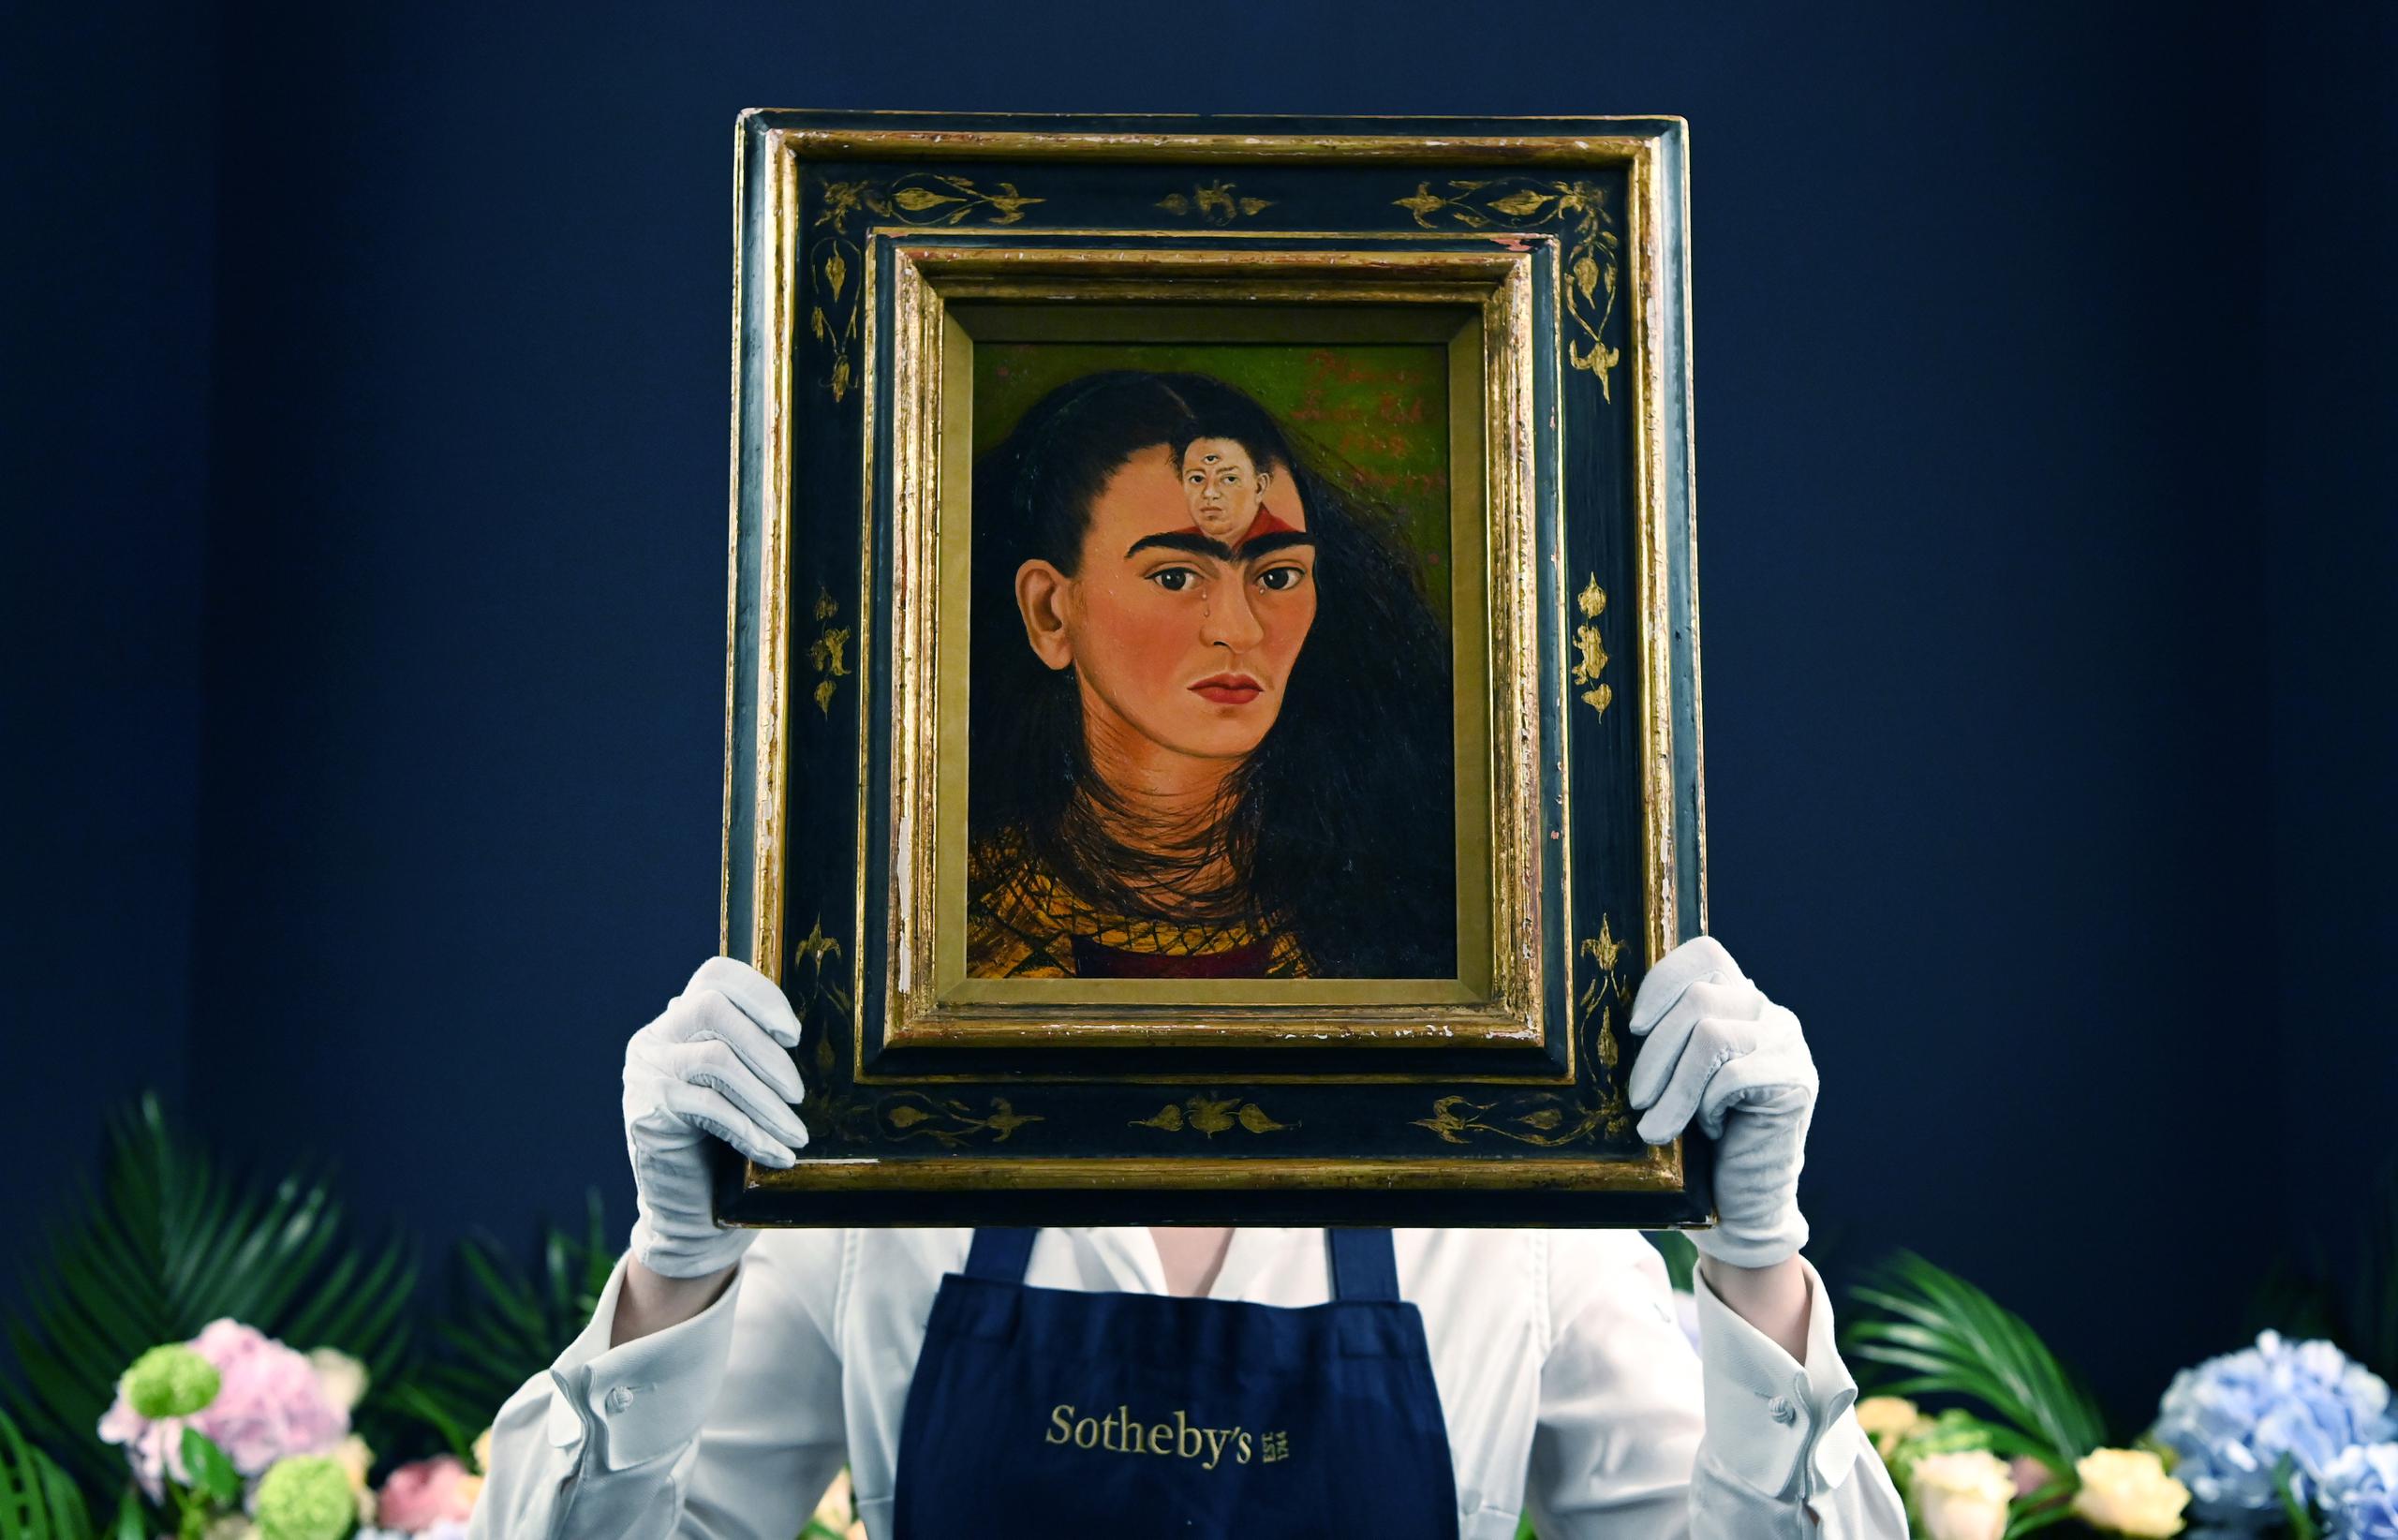 La obra "Diego y yo", de 30 centímetros de alto y 22,4 de ancho, es un autorretrato en primer plano de Kahlo que fue completado en 1949, pocos años antes de su muerte.